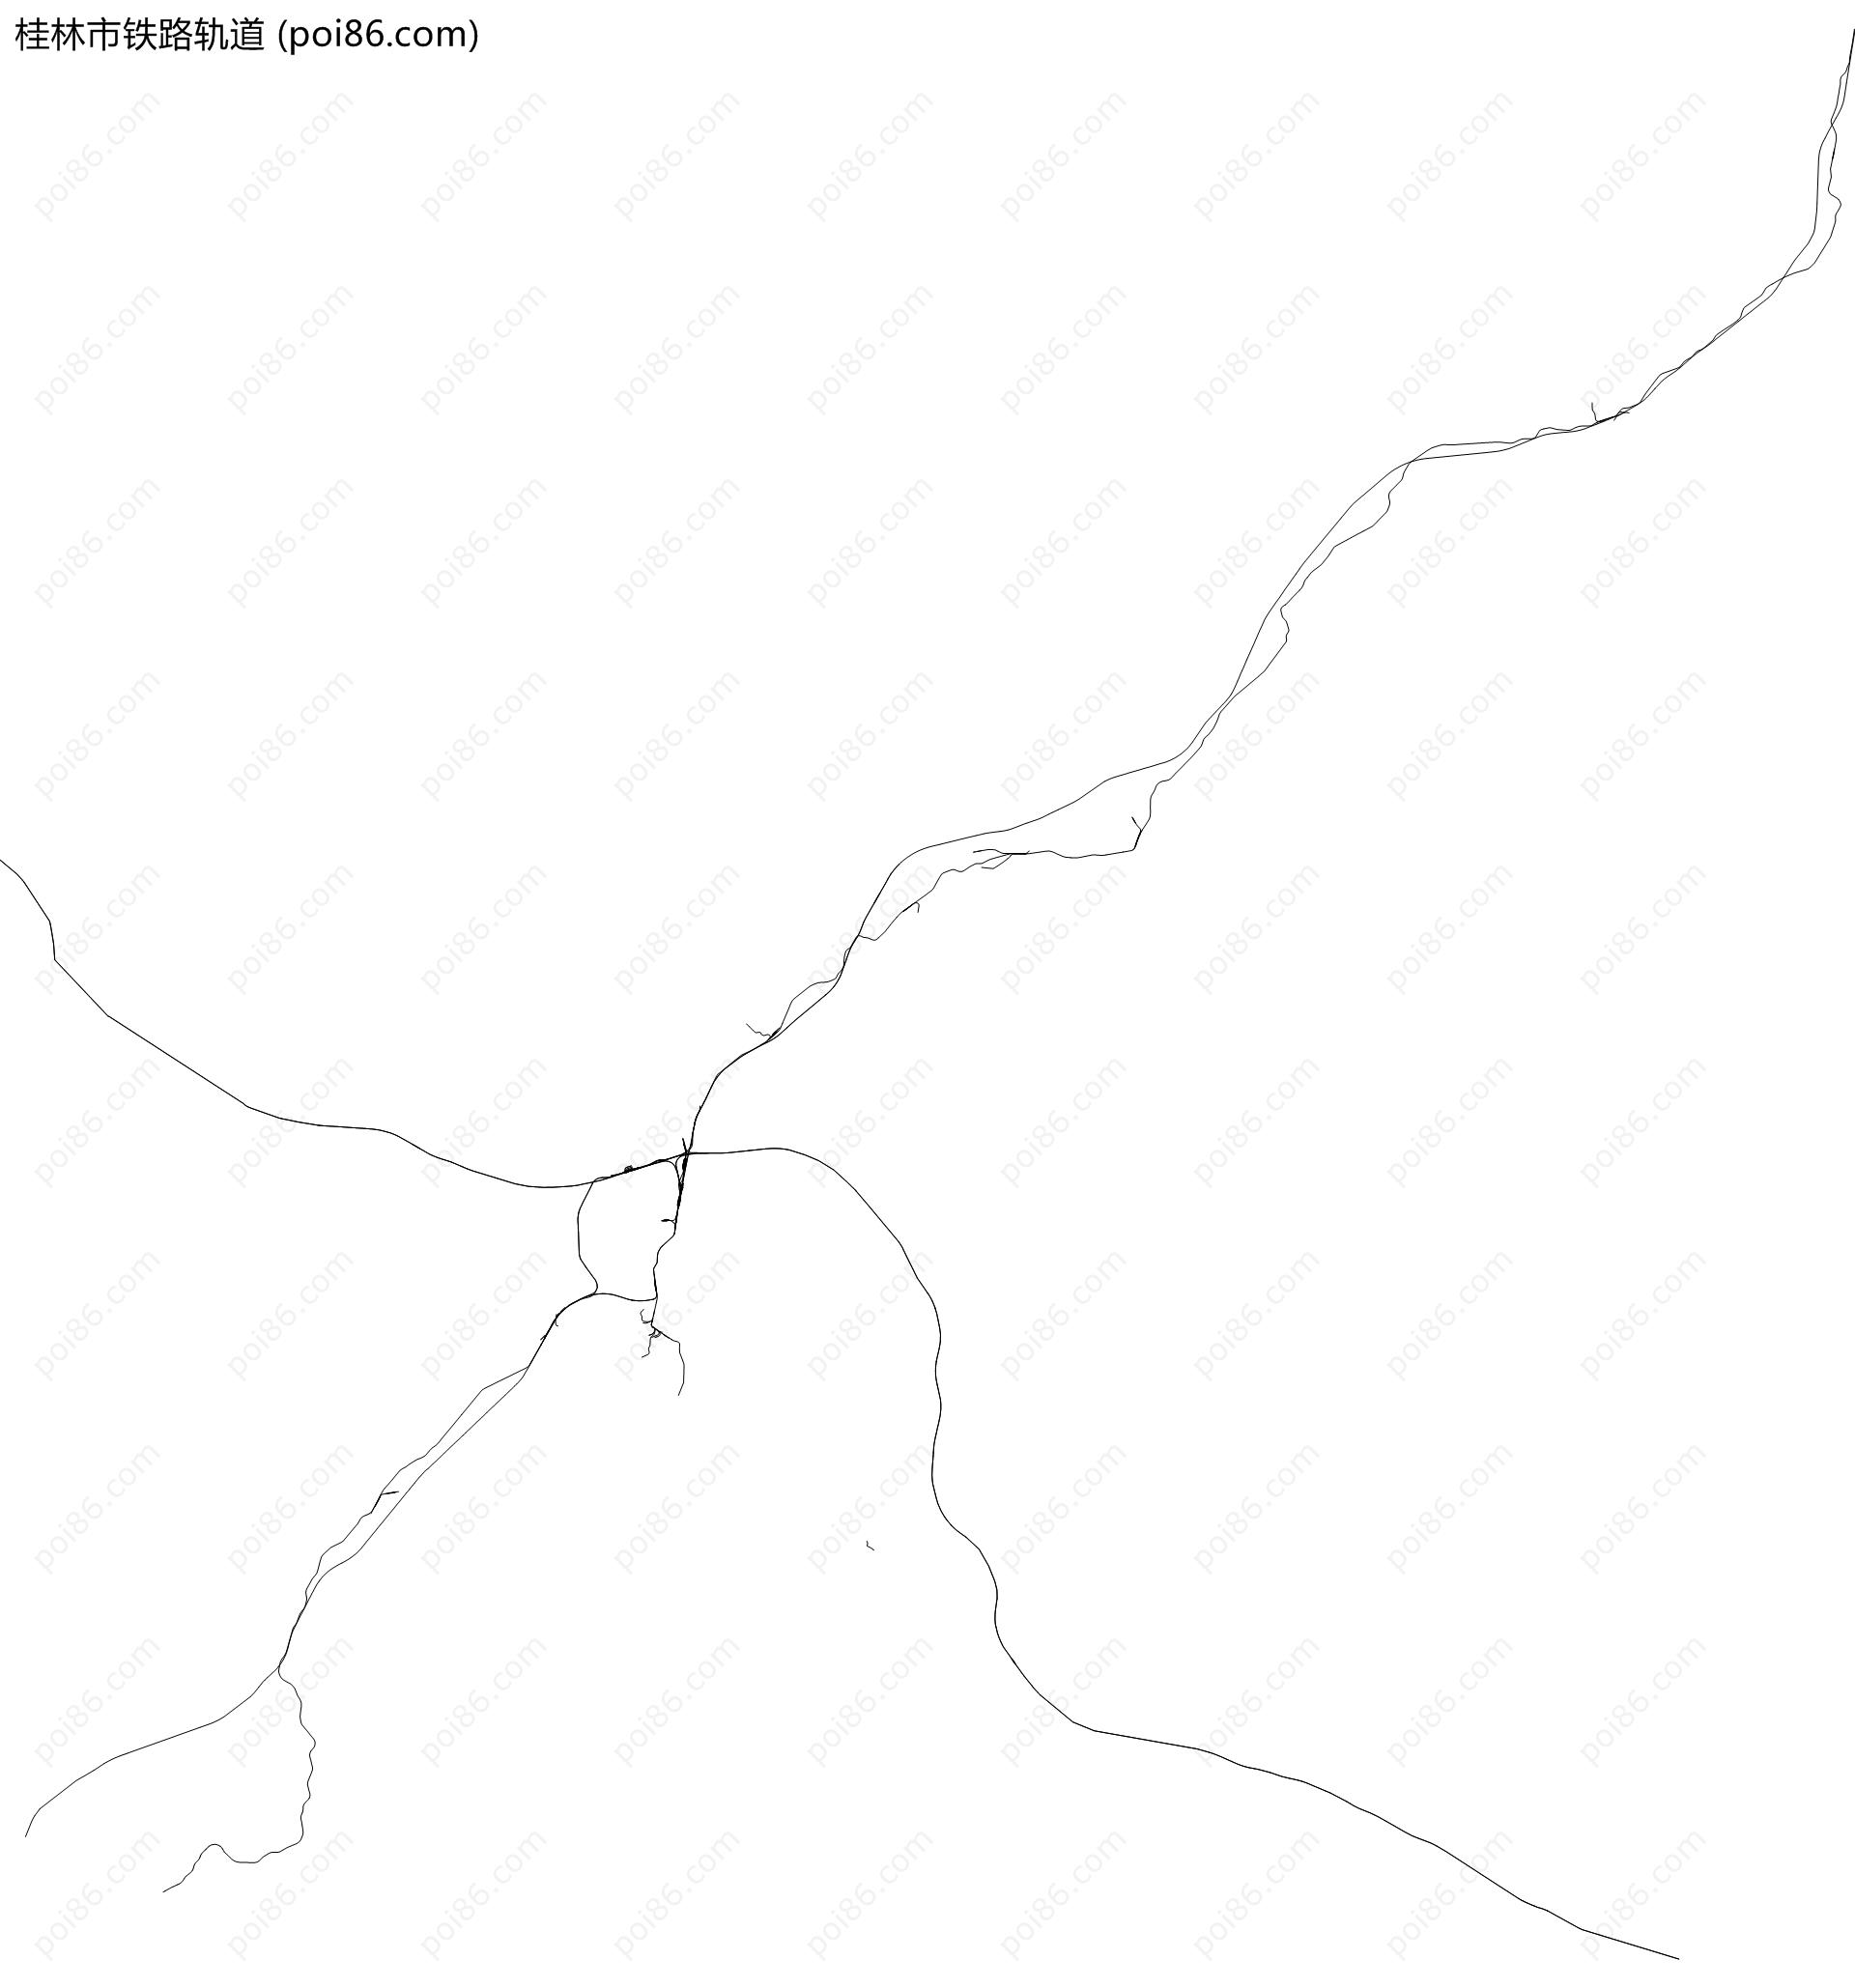 桂林市铁路轨道地图